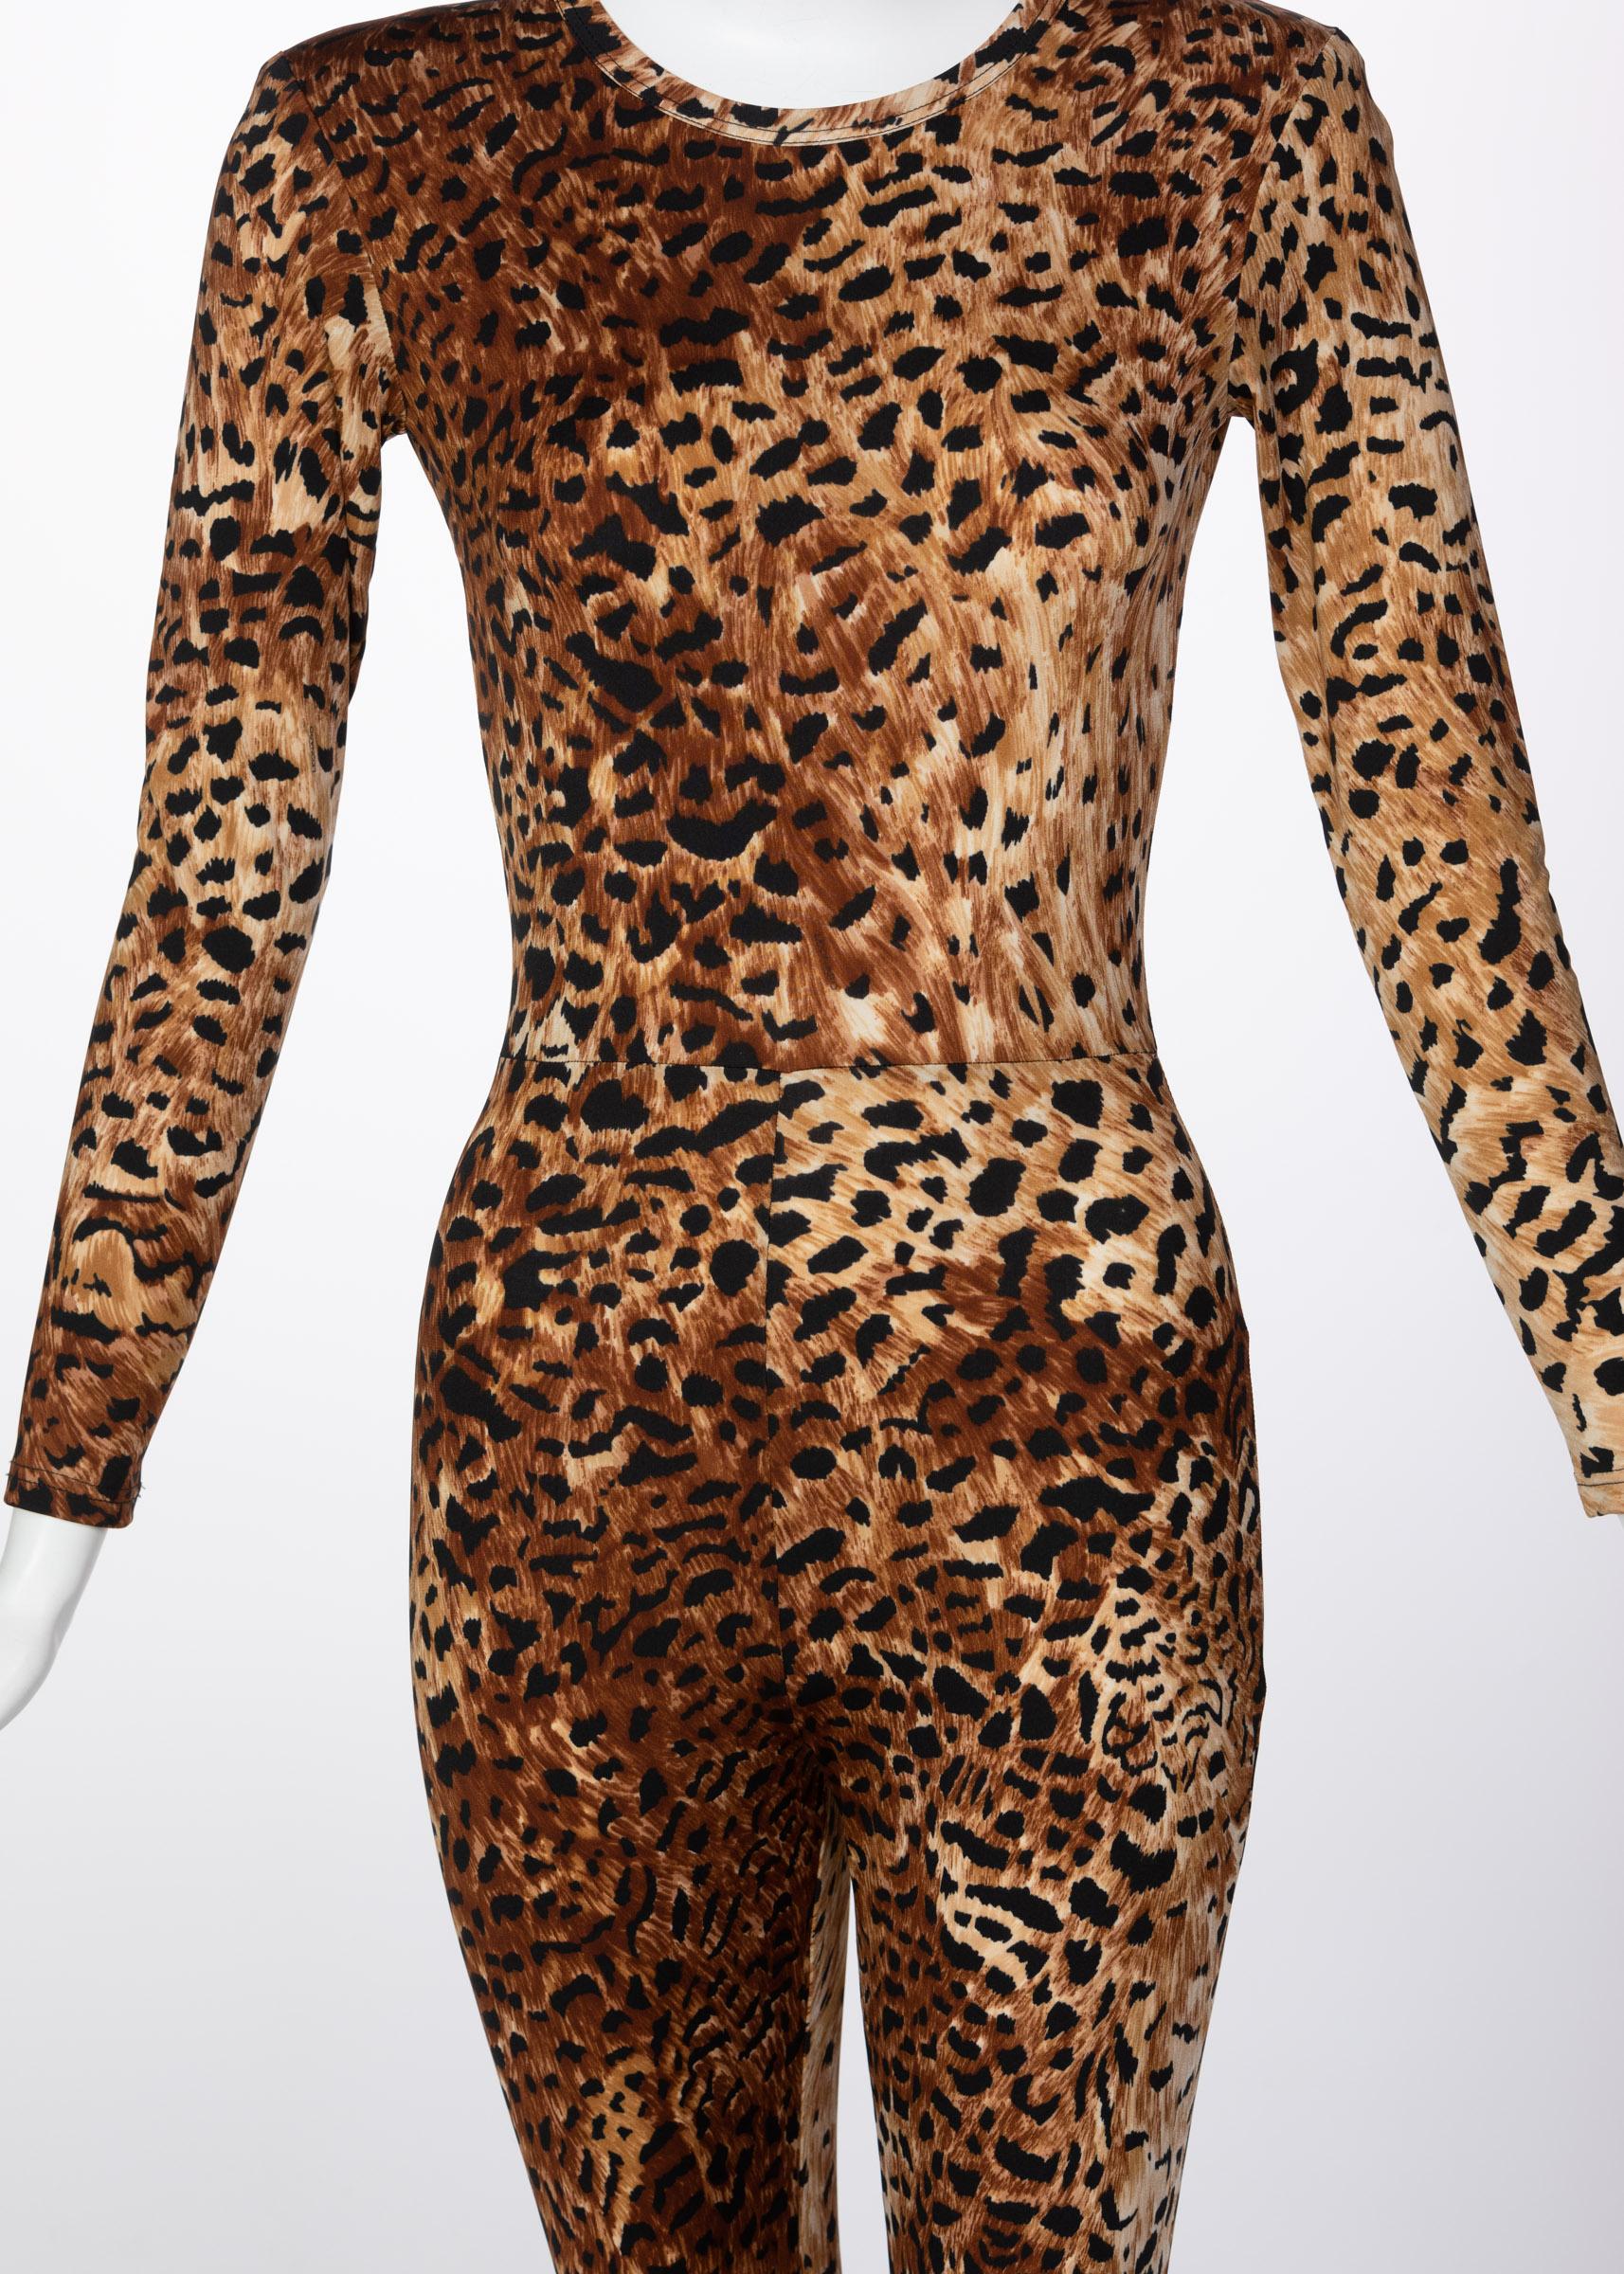 leopard catsuit